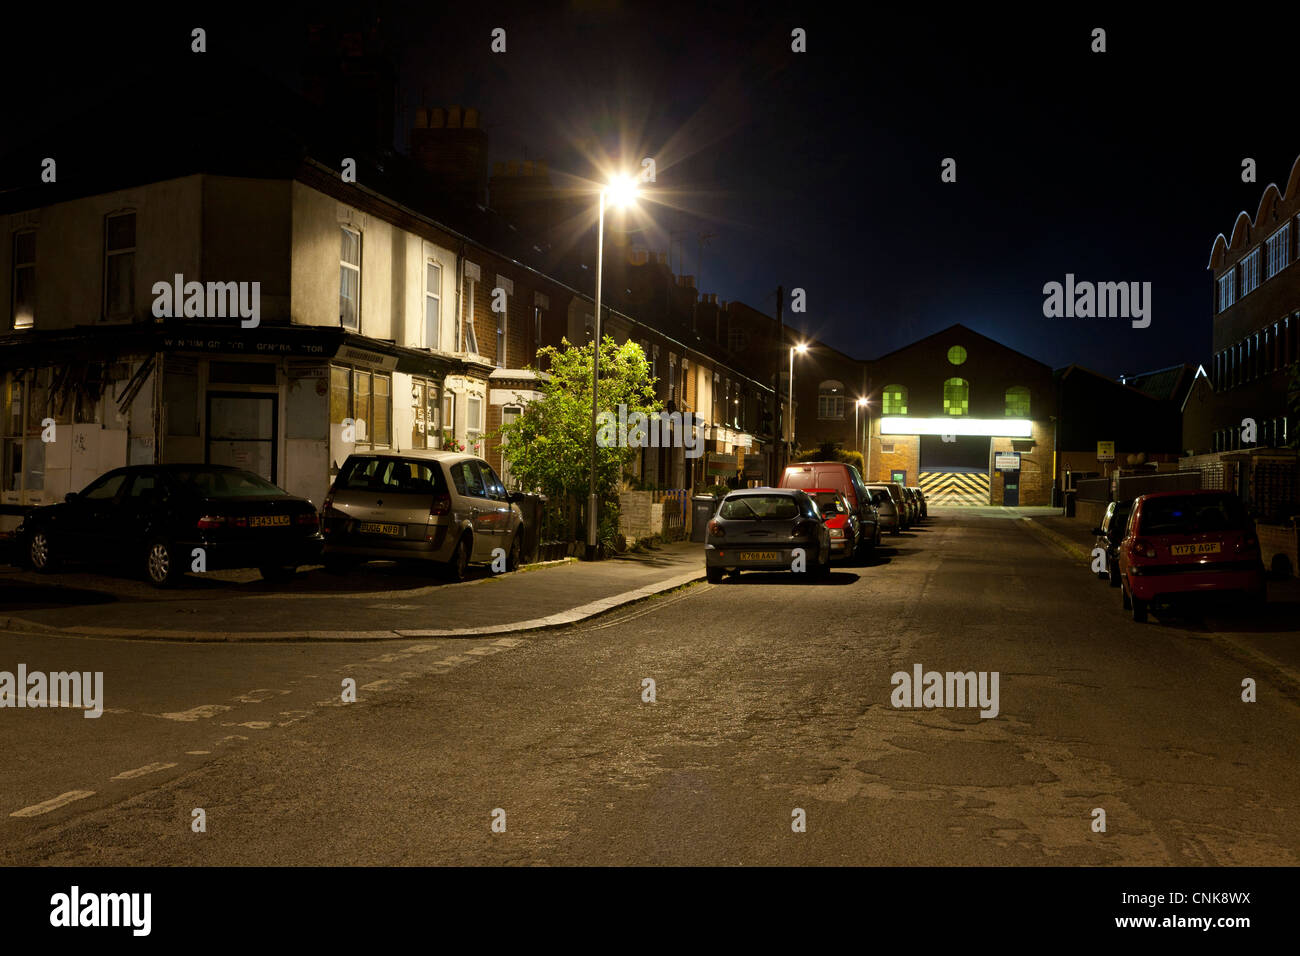 Une rue de nuit en UK Banque D'Images